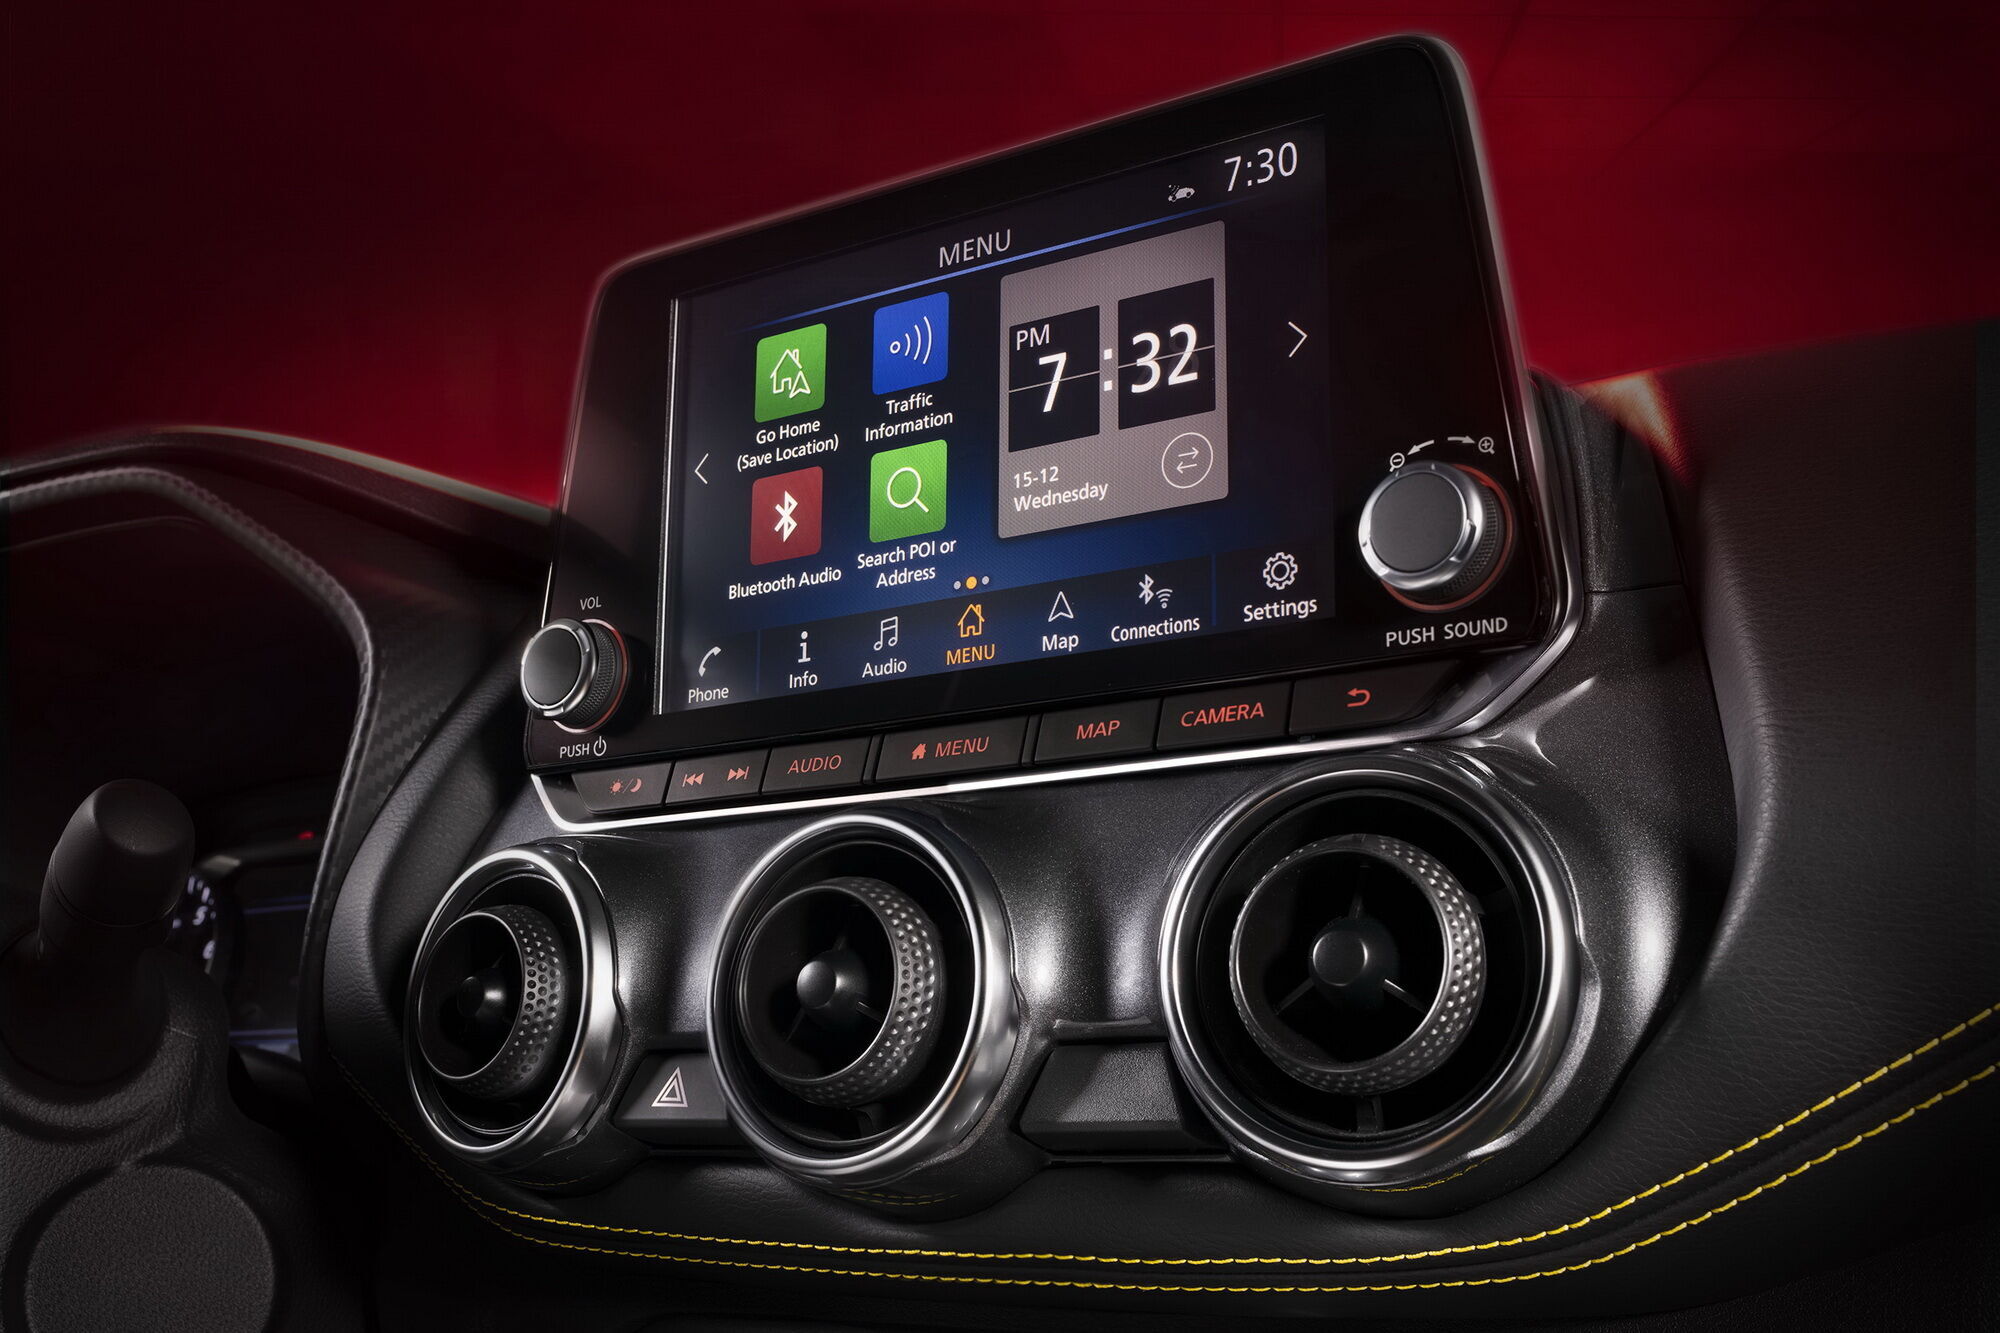 Мультимедийная система NissanConnect позволяет использовать технологии Apple CarPlay или Android Auto